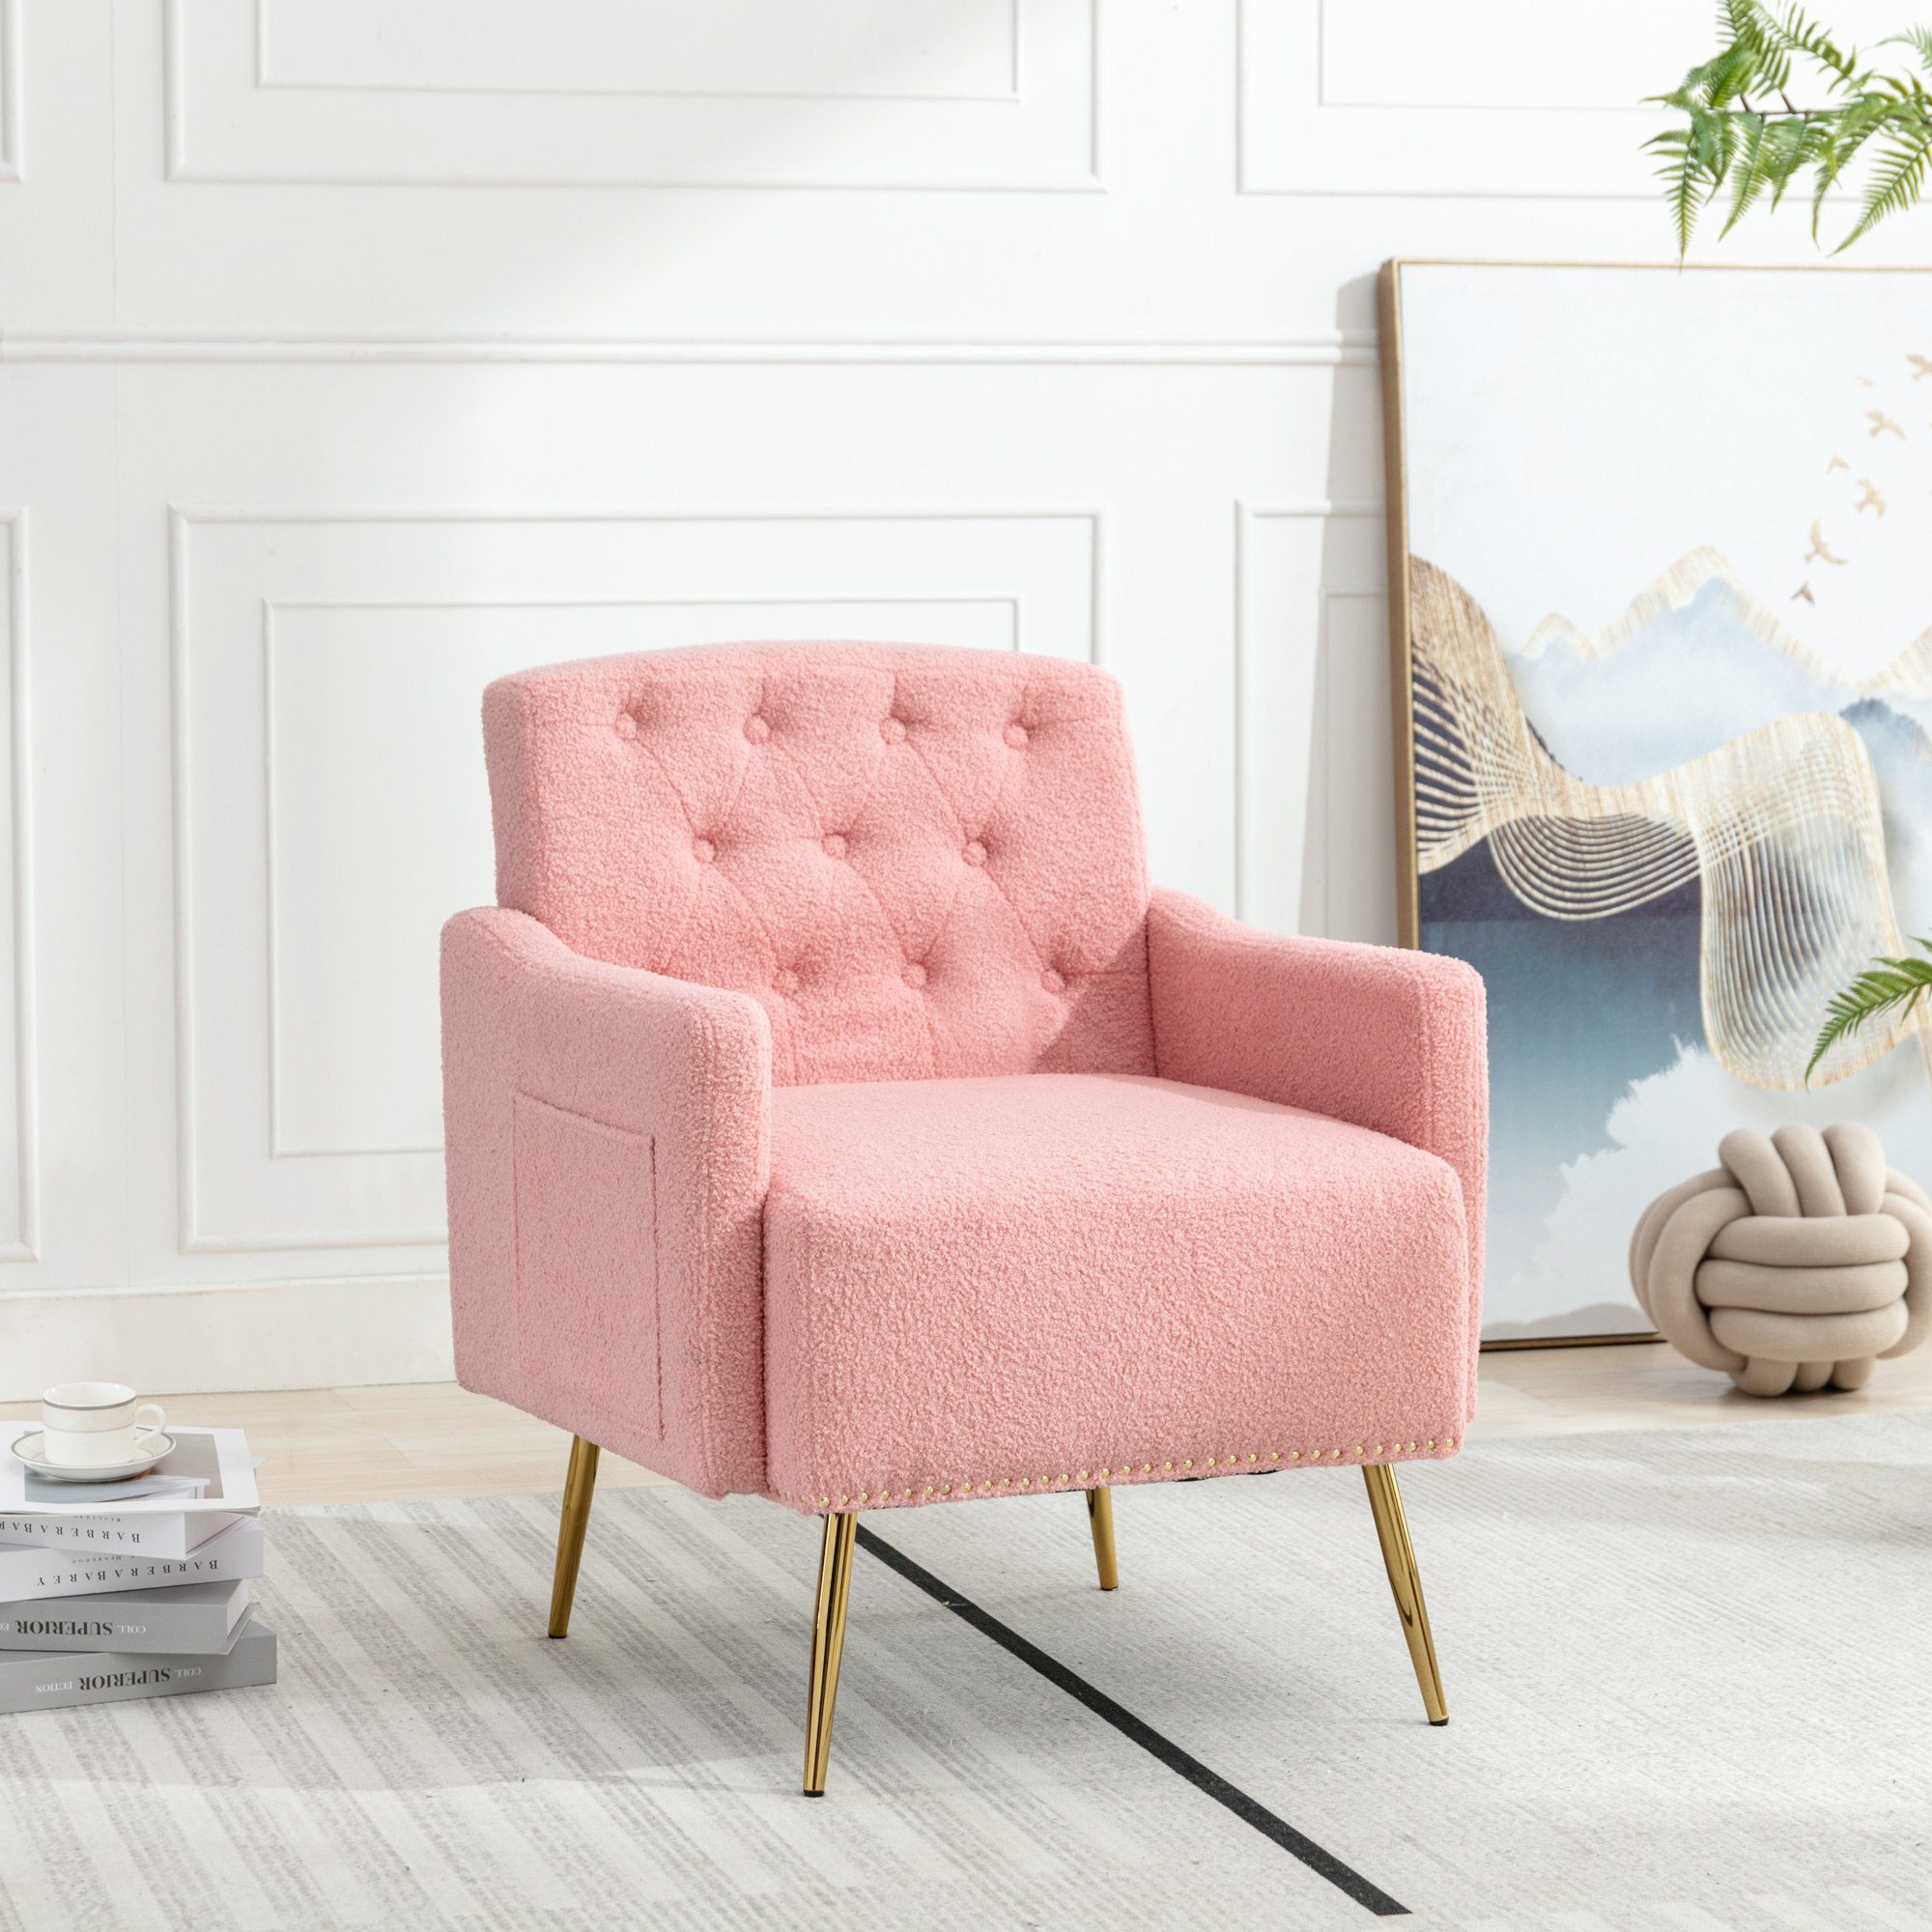 REDOM Sessel Relaxsessel, Relaxstuhl, Teddy-Samt-Freizeitsessel (Wohnzimmerstuhl, bequemer Sessel, goldene Metallbeine, Teddy-Samt-Stuhl), mit Reißverschluss-Design, geeignet zum Lesen oder Entspannen rosa